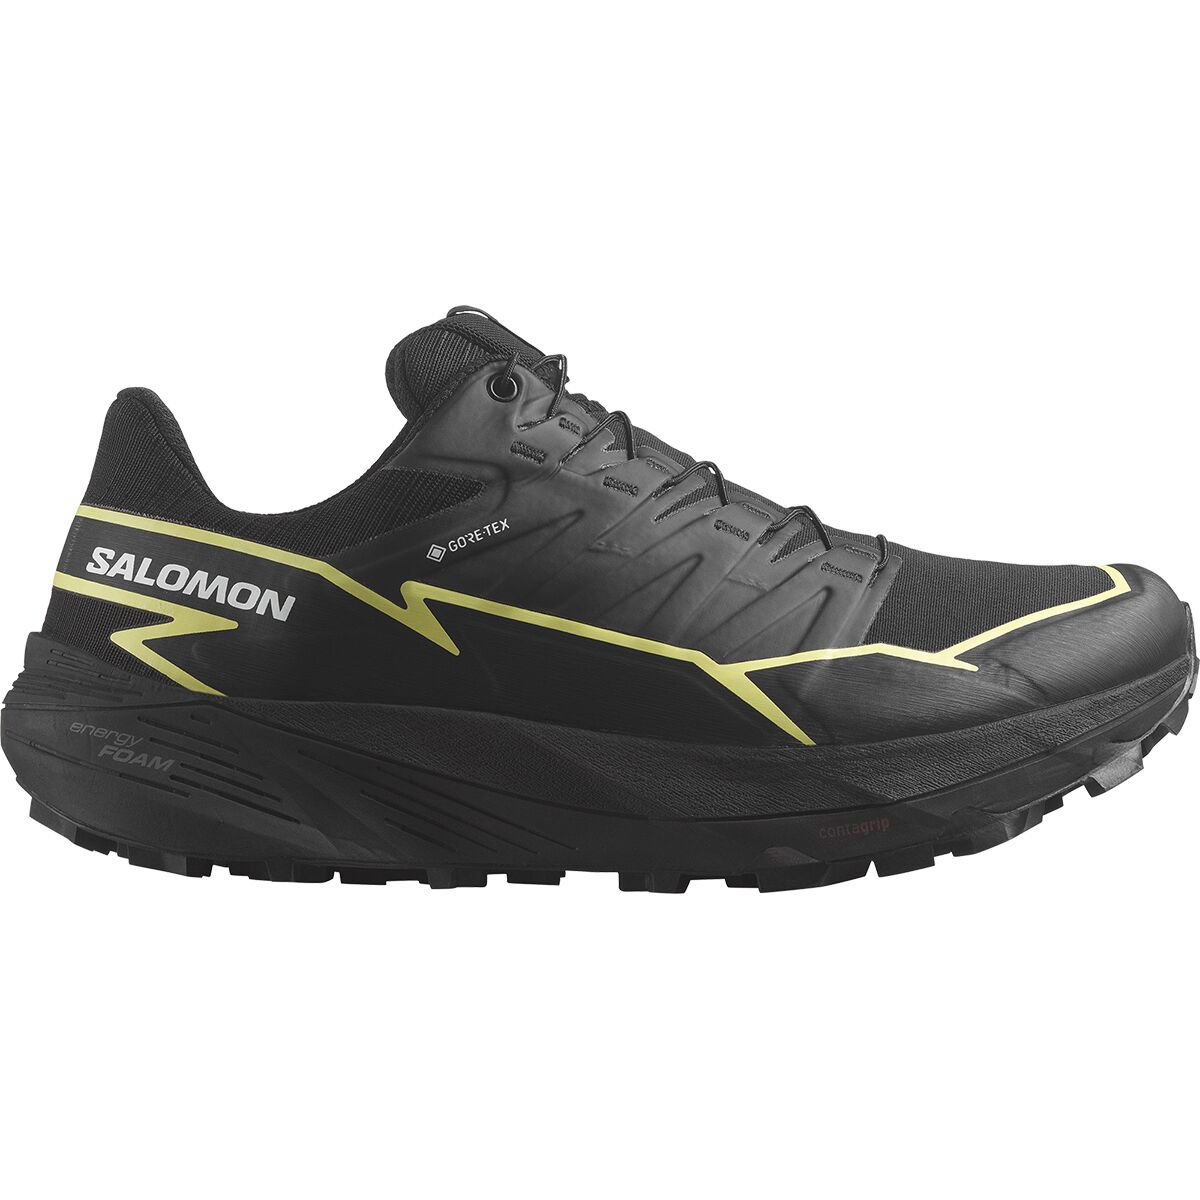 Salomon Thundercross GORE-TEX Trail Running Shoe - Women's Black/Black/Charlock, US 6.0/UK 4.5